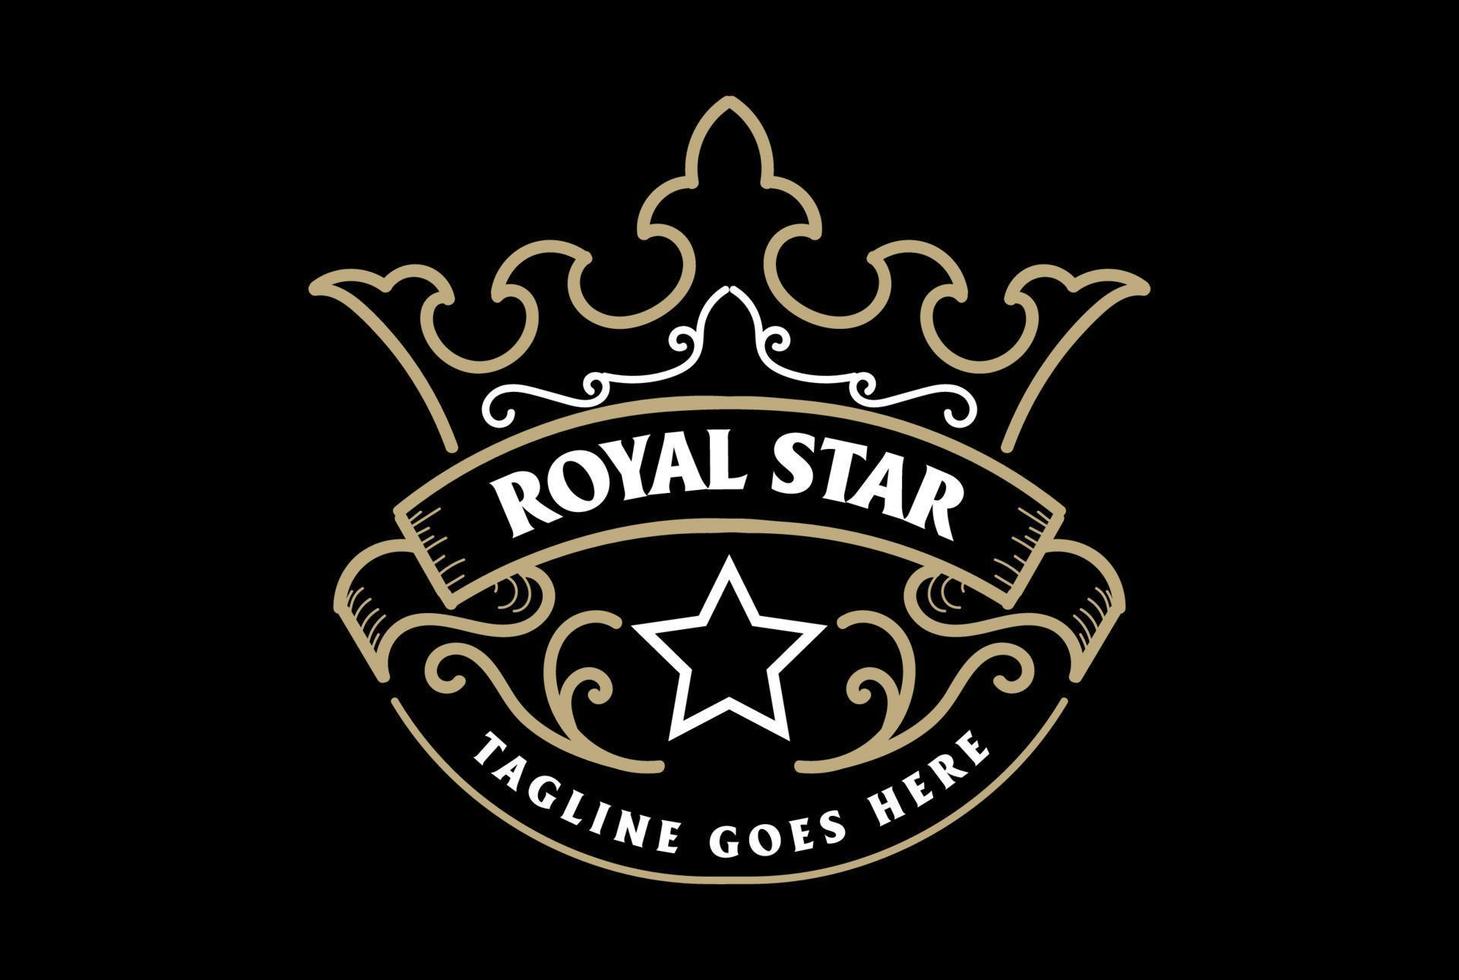 wijnoogst retro gouden Koninklijk koning koningin kroon insigne embleem etiket logo ontwerp vector